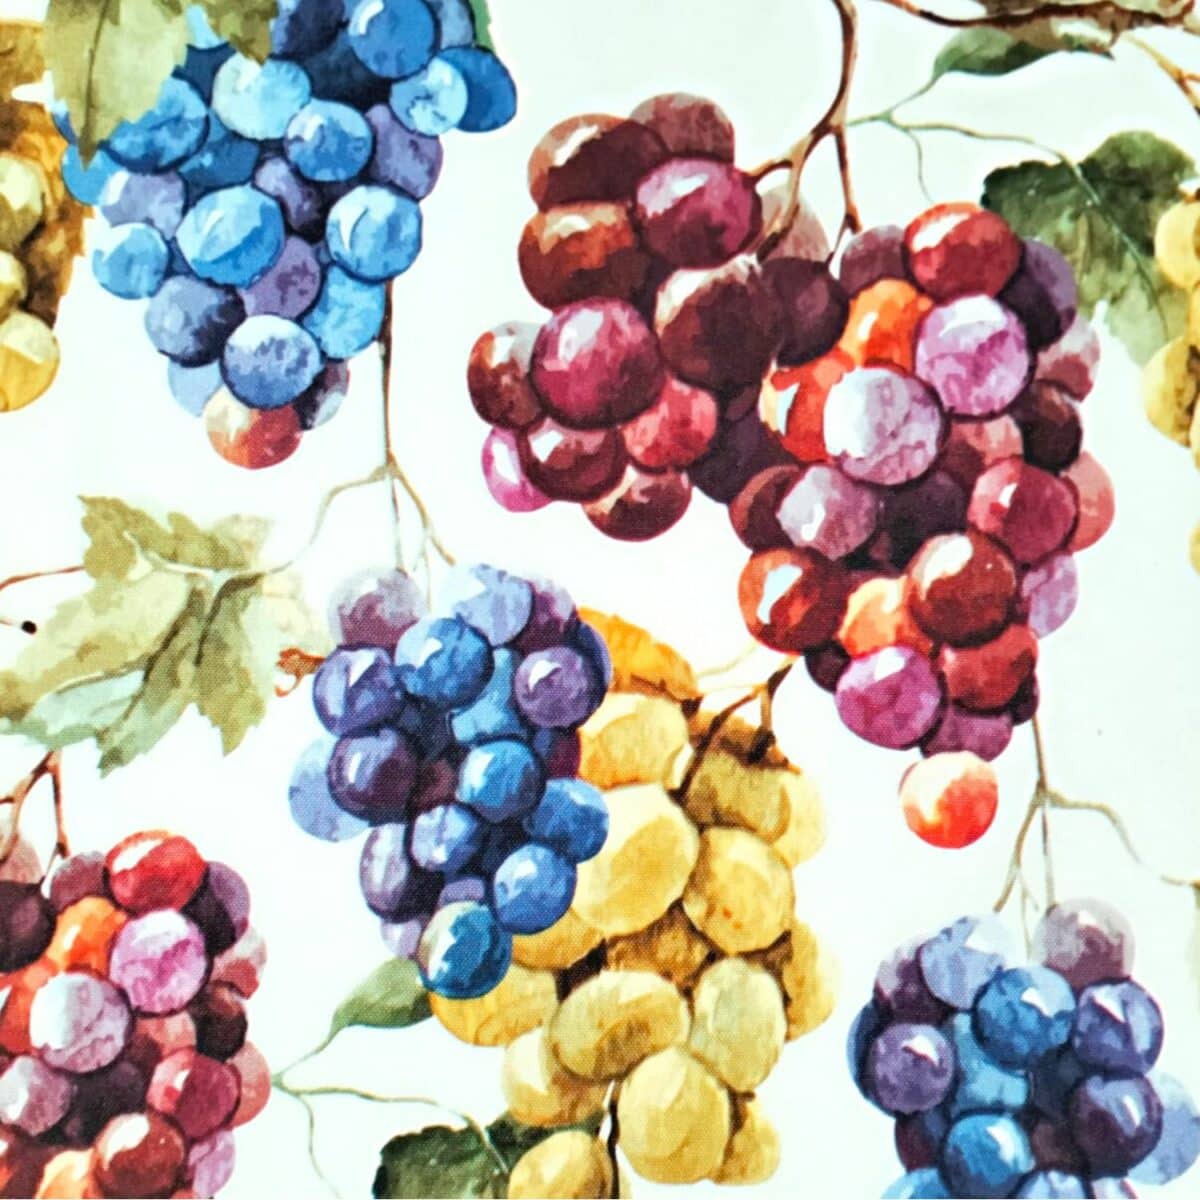 vendemmia-tovaglia-antimacchia-idrorepellente-uva-uve-grappoli-multicolore-cucina-bianco-giallo-rosso-blu-verde-dettaglio